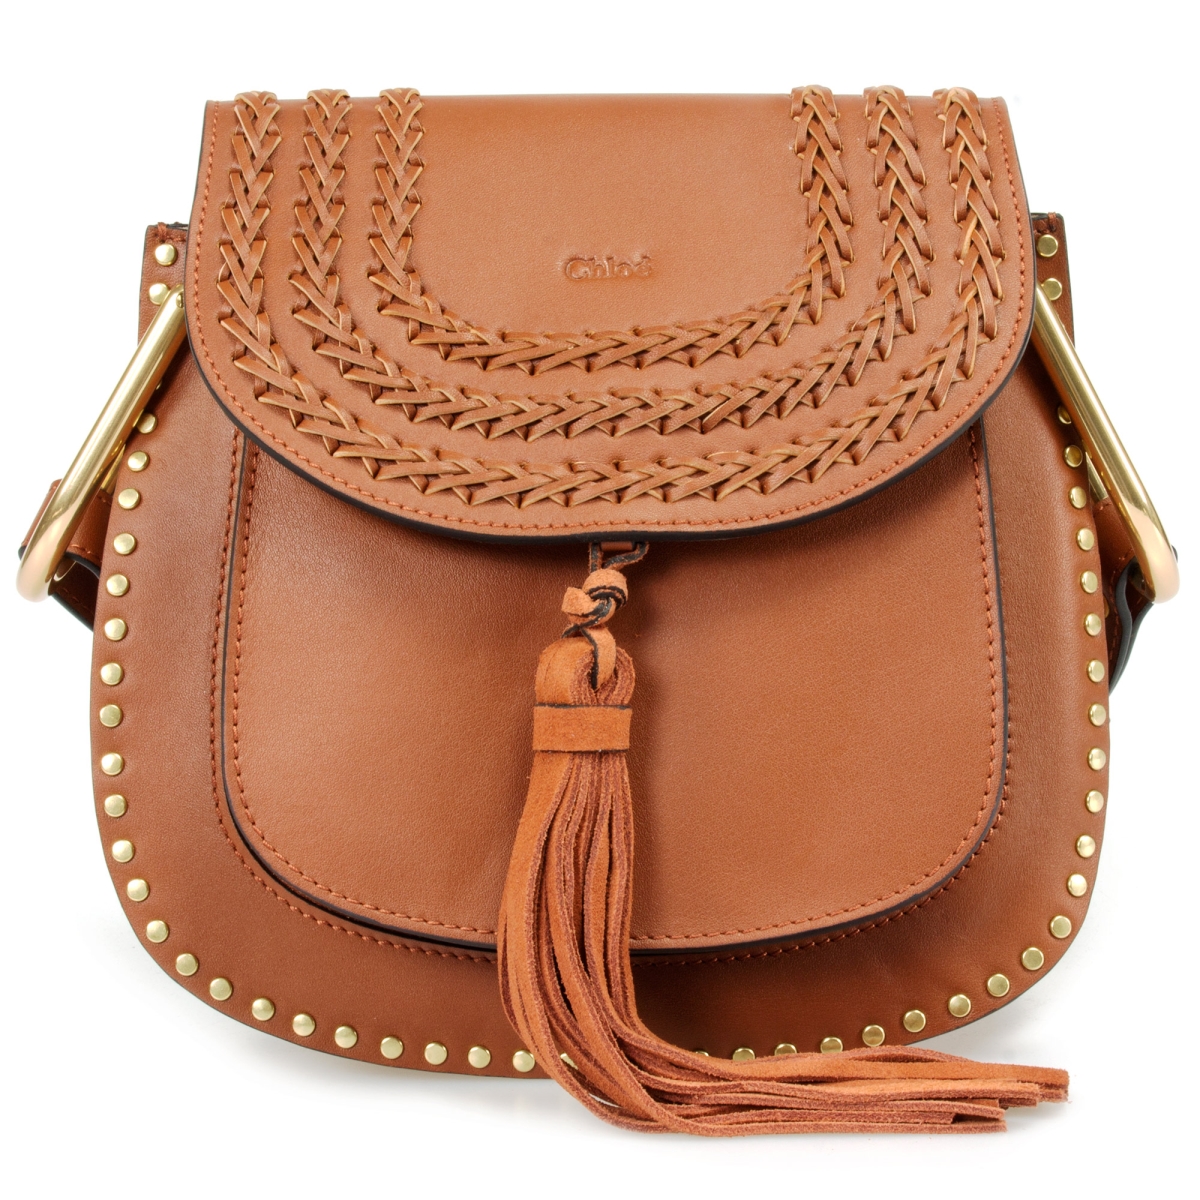 Chl-hbag-hson-brn-gld-s Hudson Calfskin Shoulder Bag, Caramel With Gold Hardware